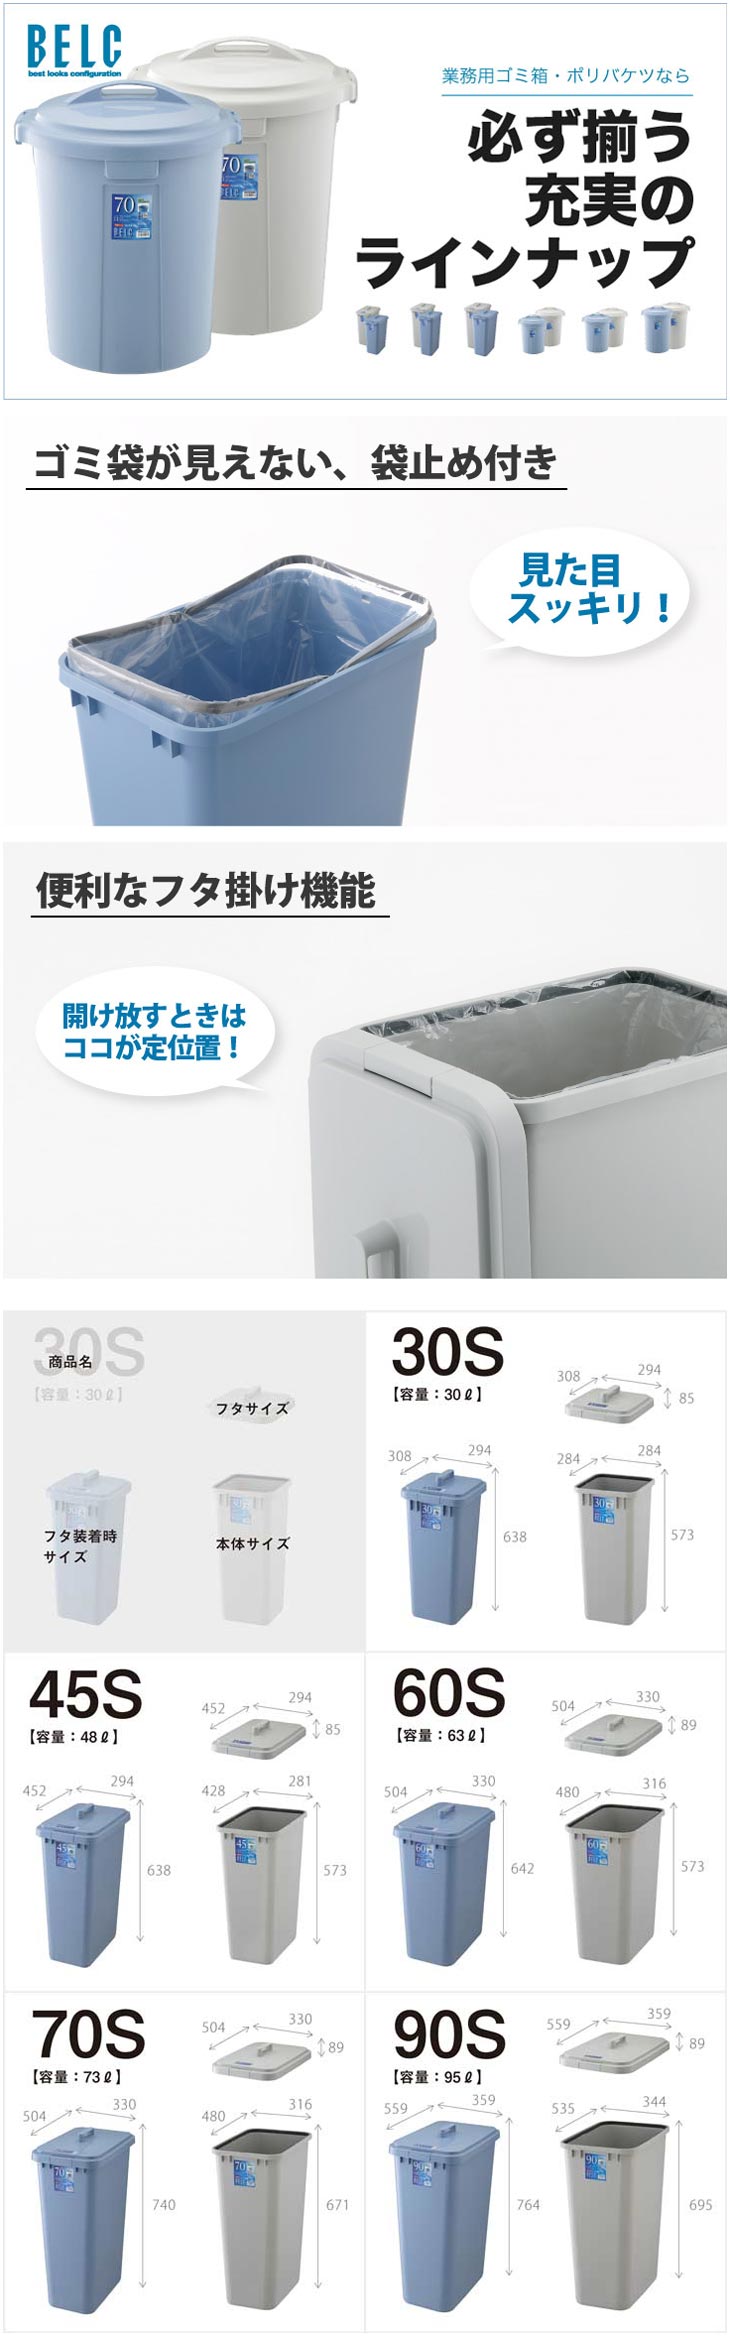 楽天市場】ゴミ箱 業務用 ベルク 90S 本体・フタセット ごみ箱 角型 